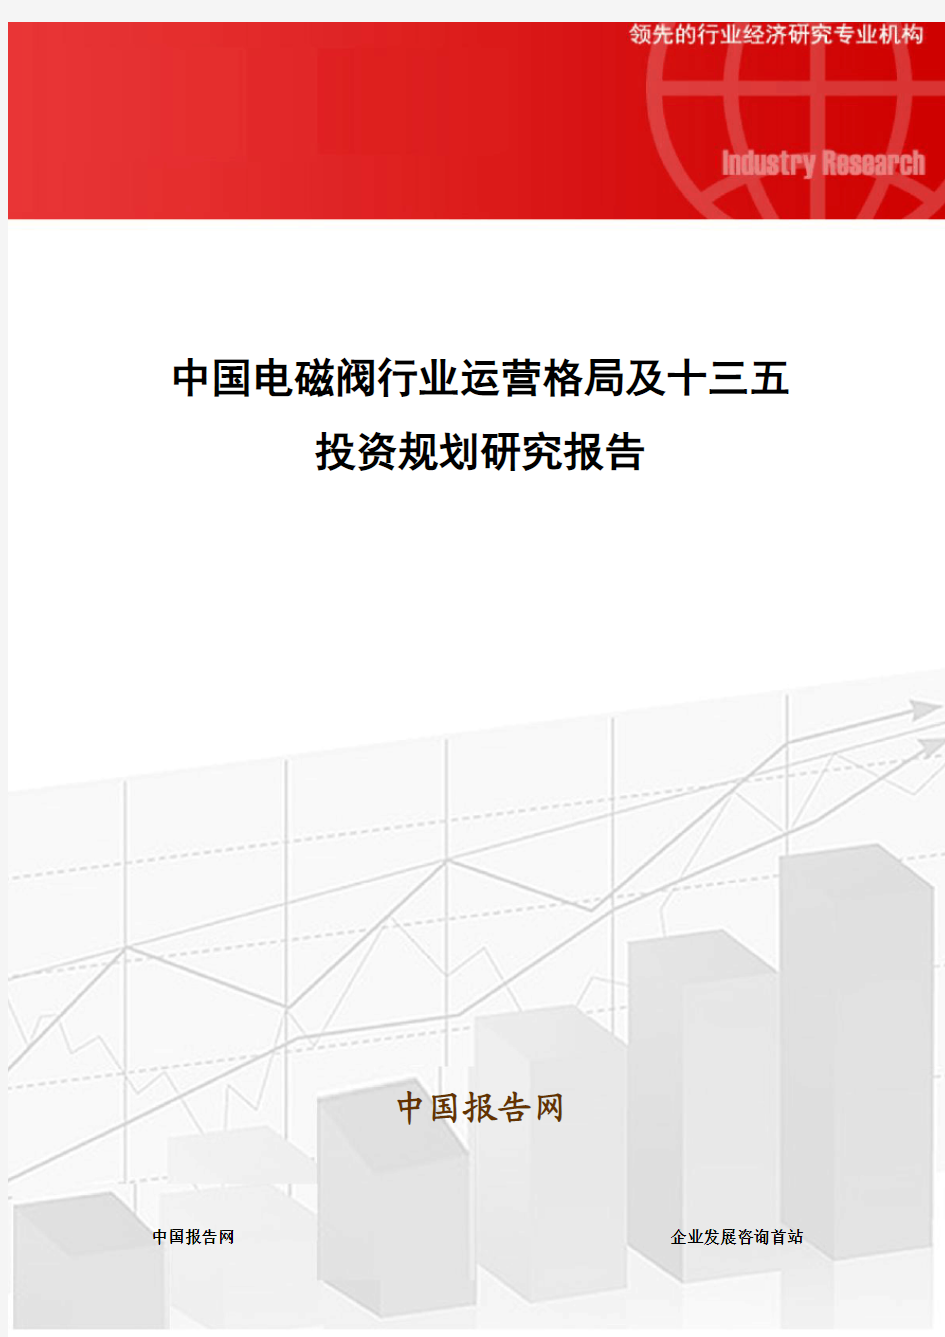 中国电磁阀行业运营格局及十三五投资规划研究报告